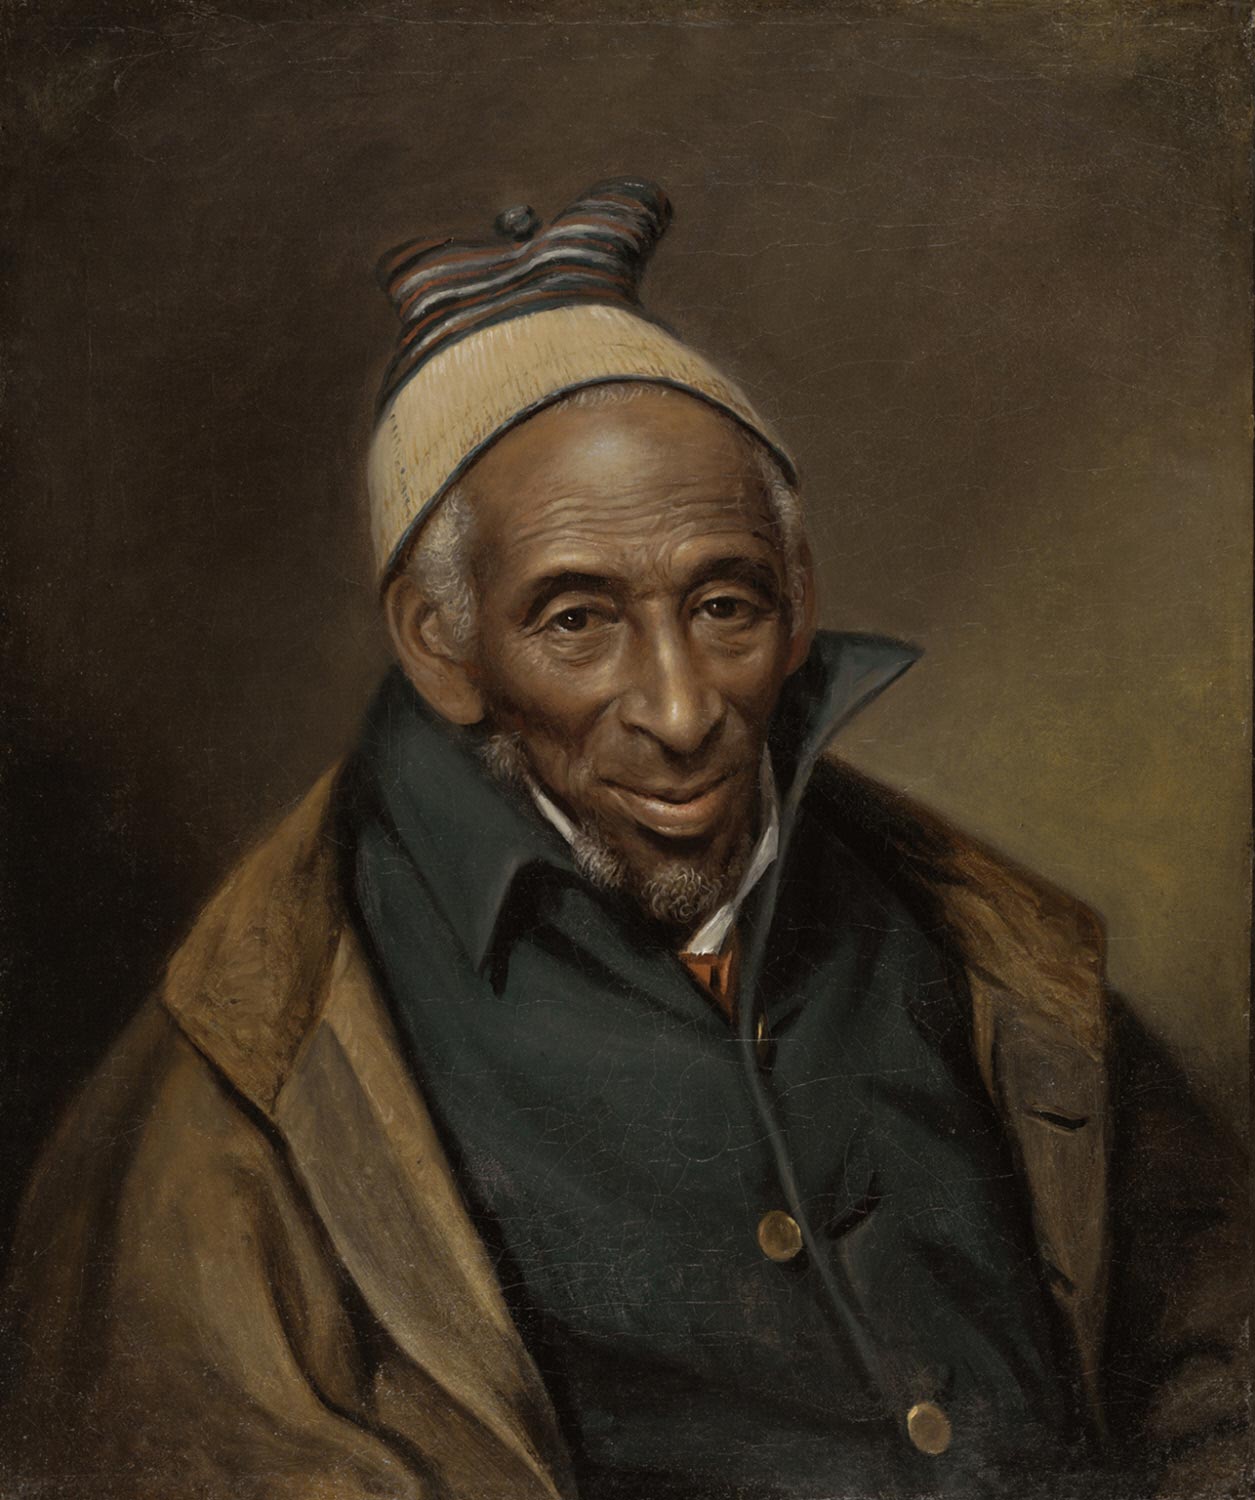 Портрет Ярроу Мамута (Мухаммад Яро) by Charles Willson Peale - 1819 - 61 × 50.8 см 